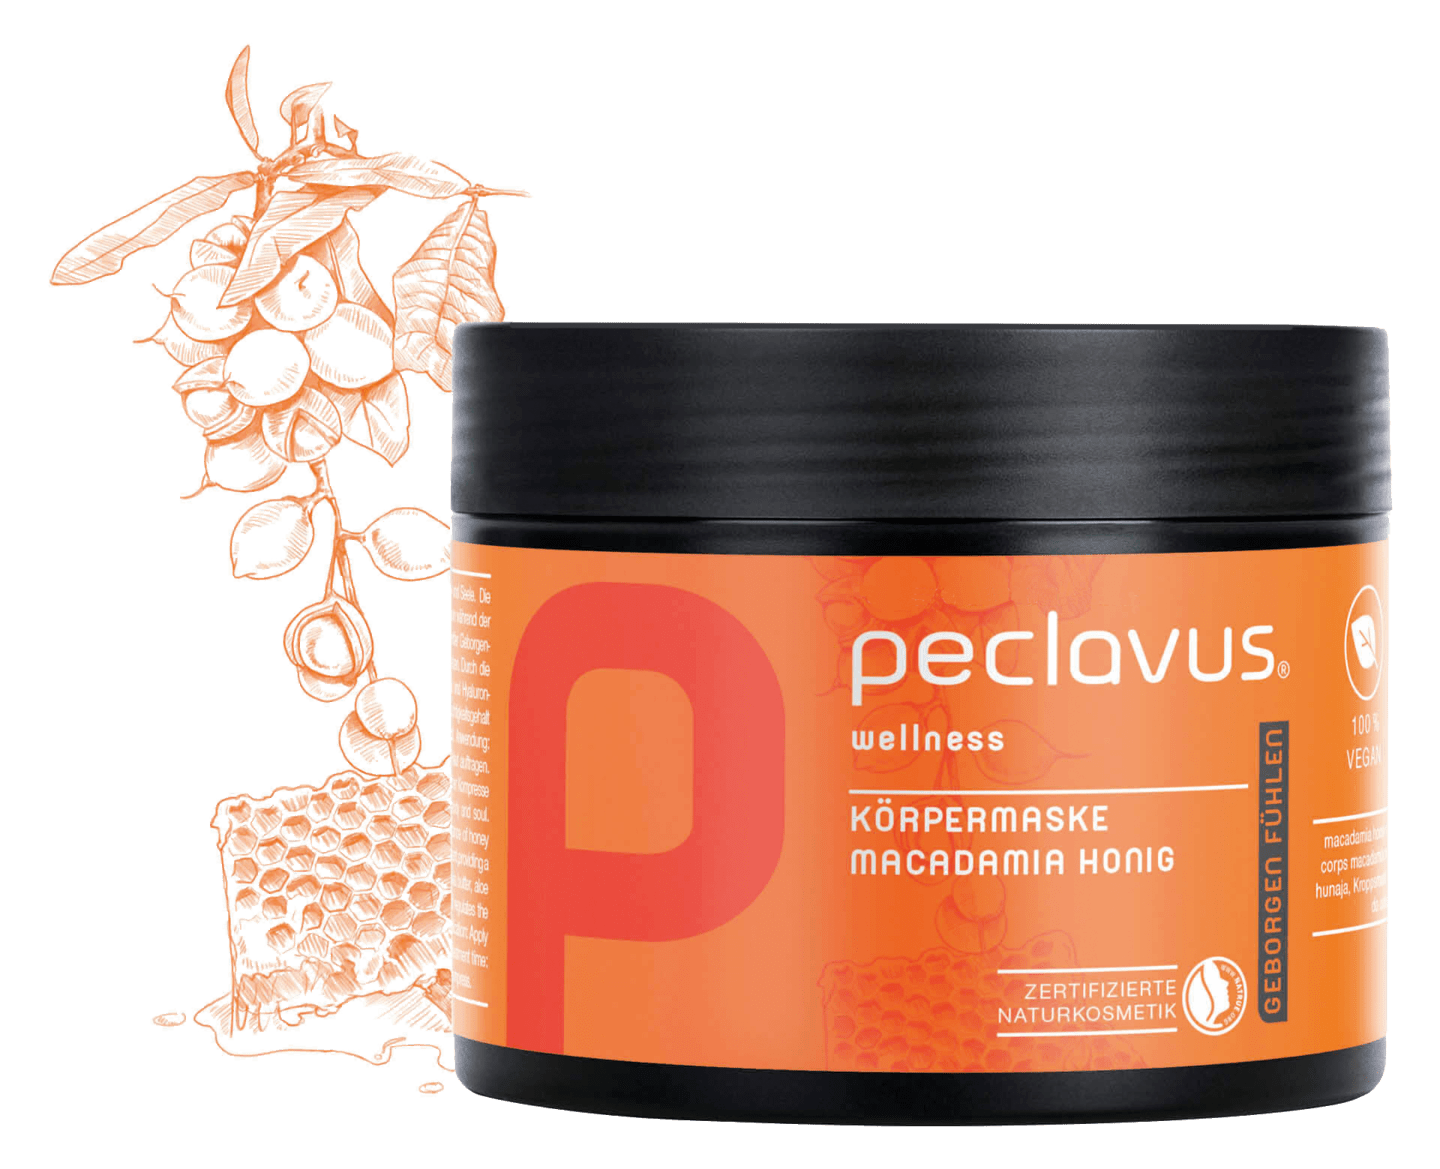 peclavus - Körpermaske Macadamia Honig, 500 ml